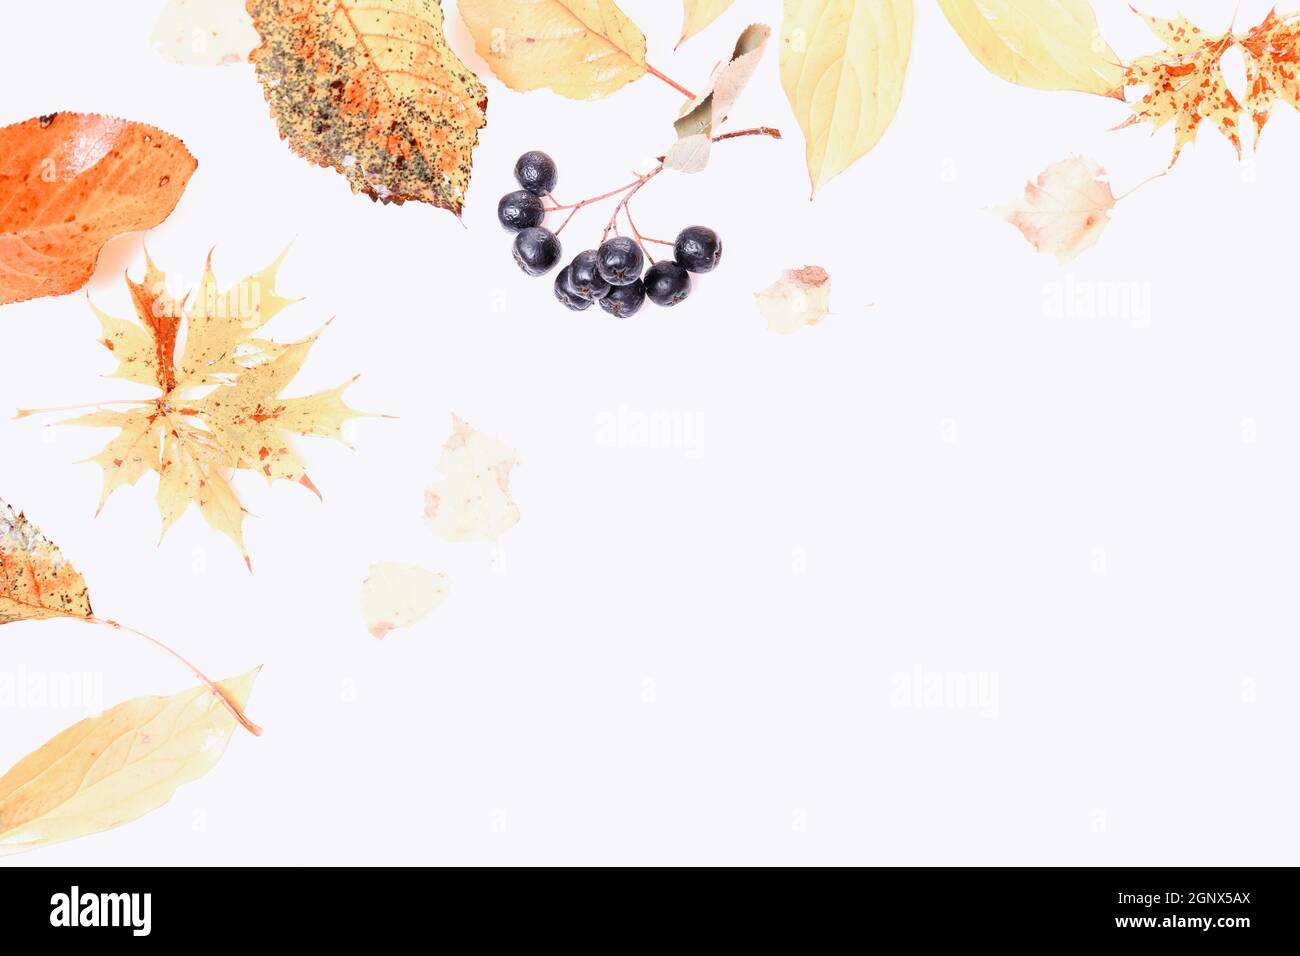 Herbst Komposition. Rahmen der Herbst trocken Multi-farbigen Blätter und Beeren von Aronia auf weißem Hintergrund. Herbst, Herbst Konzept. Stockfoto